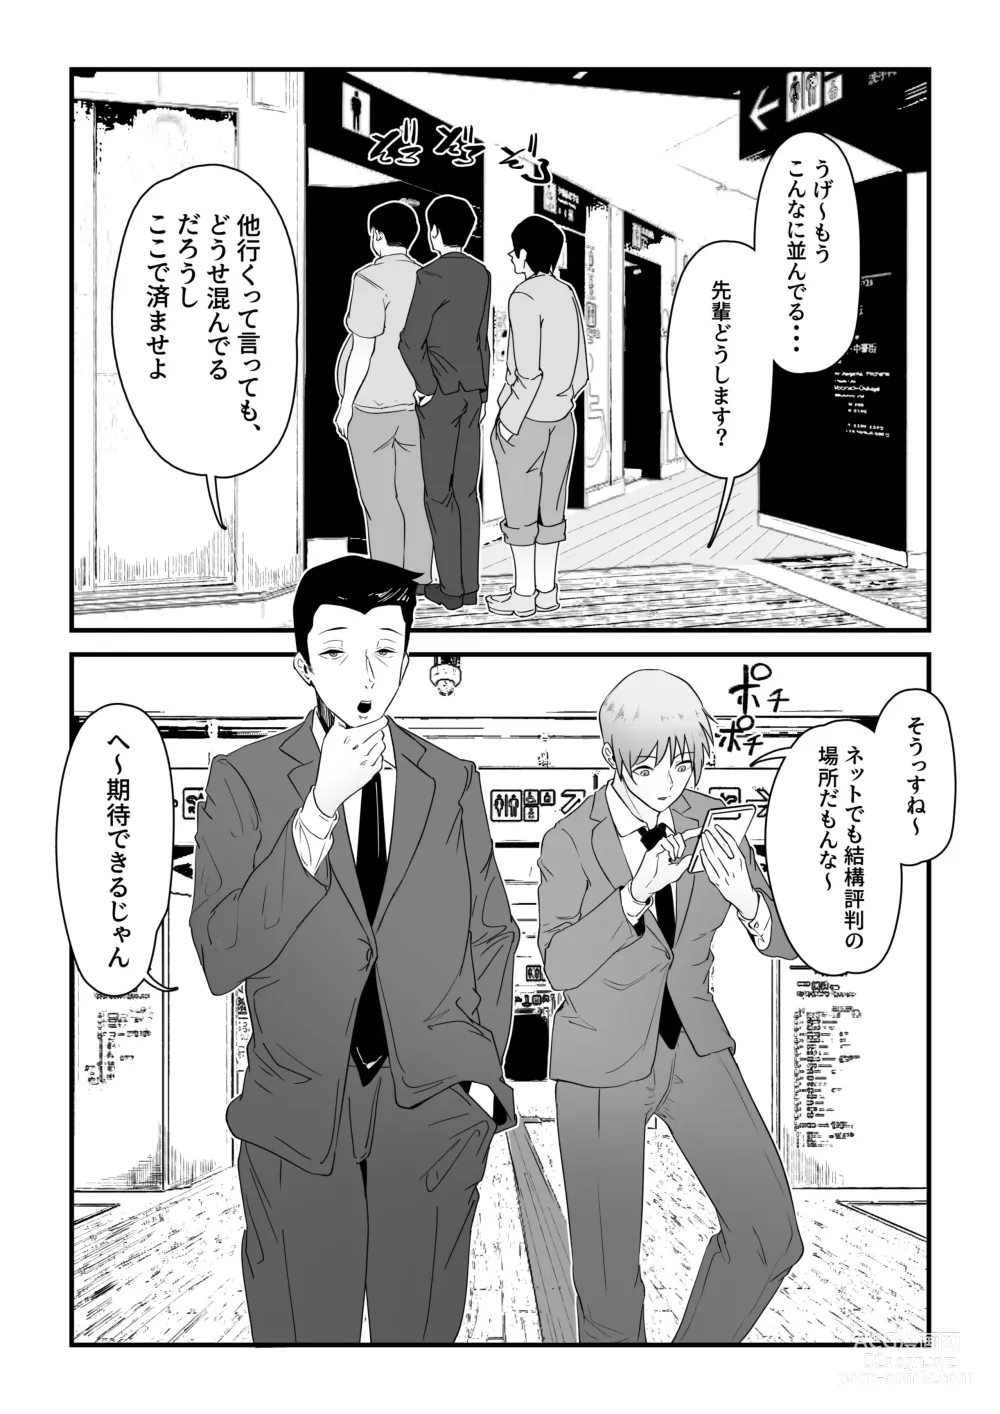 Page 2 of doujinshi Danseiyou Toile wa Itsumo Kondeiru.